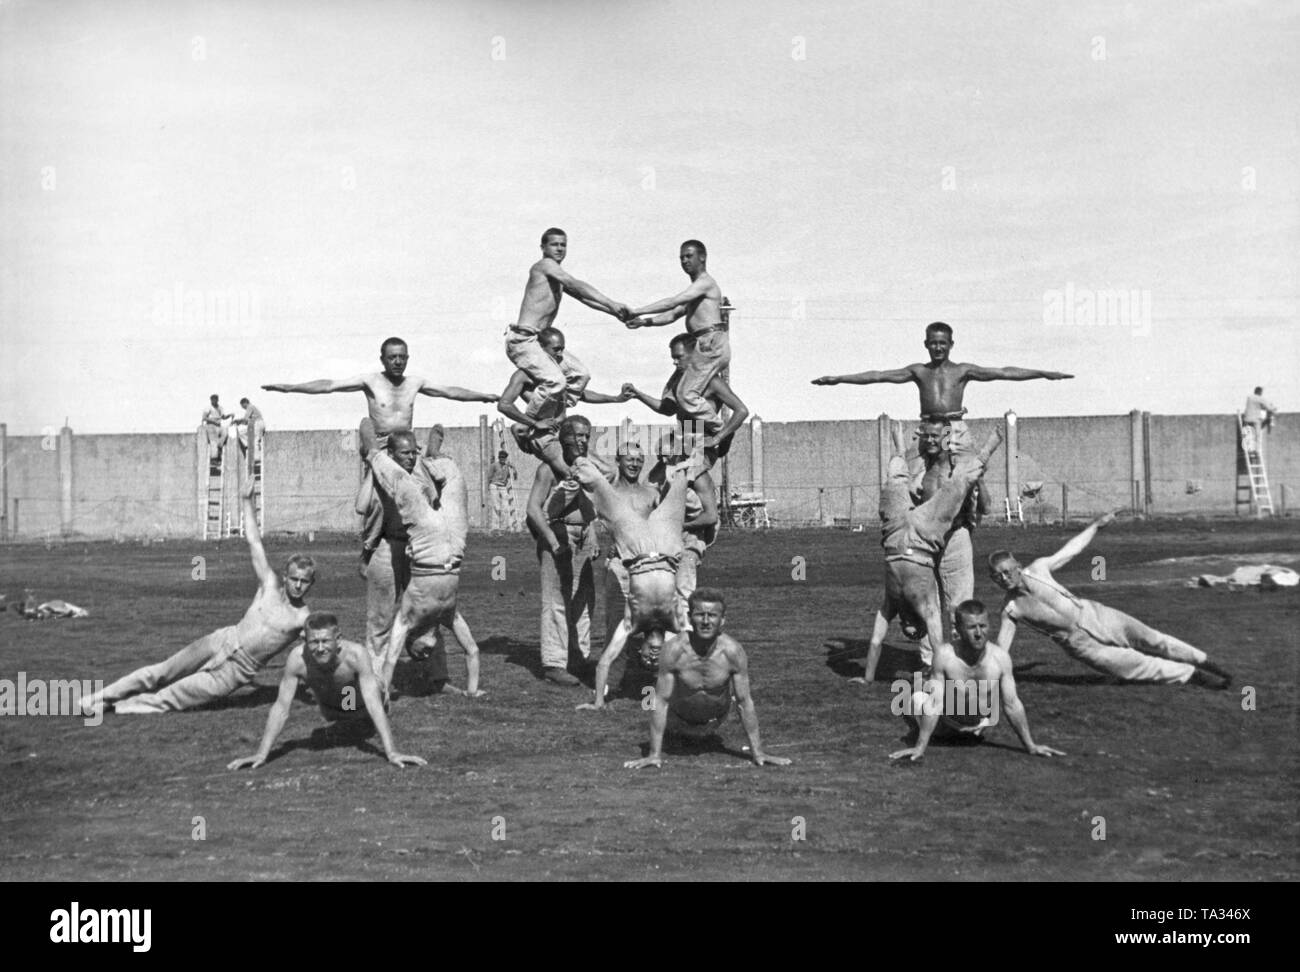 Los prisioneros haciendo gimnasia en el campo de concentración. En el fondo de la pared del campo de concentración. Esta foto, al igual que muchos otros, fue hecha para fines de propaganda nazi. Foto de stock